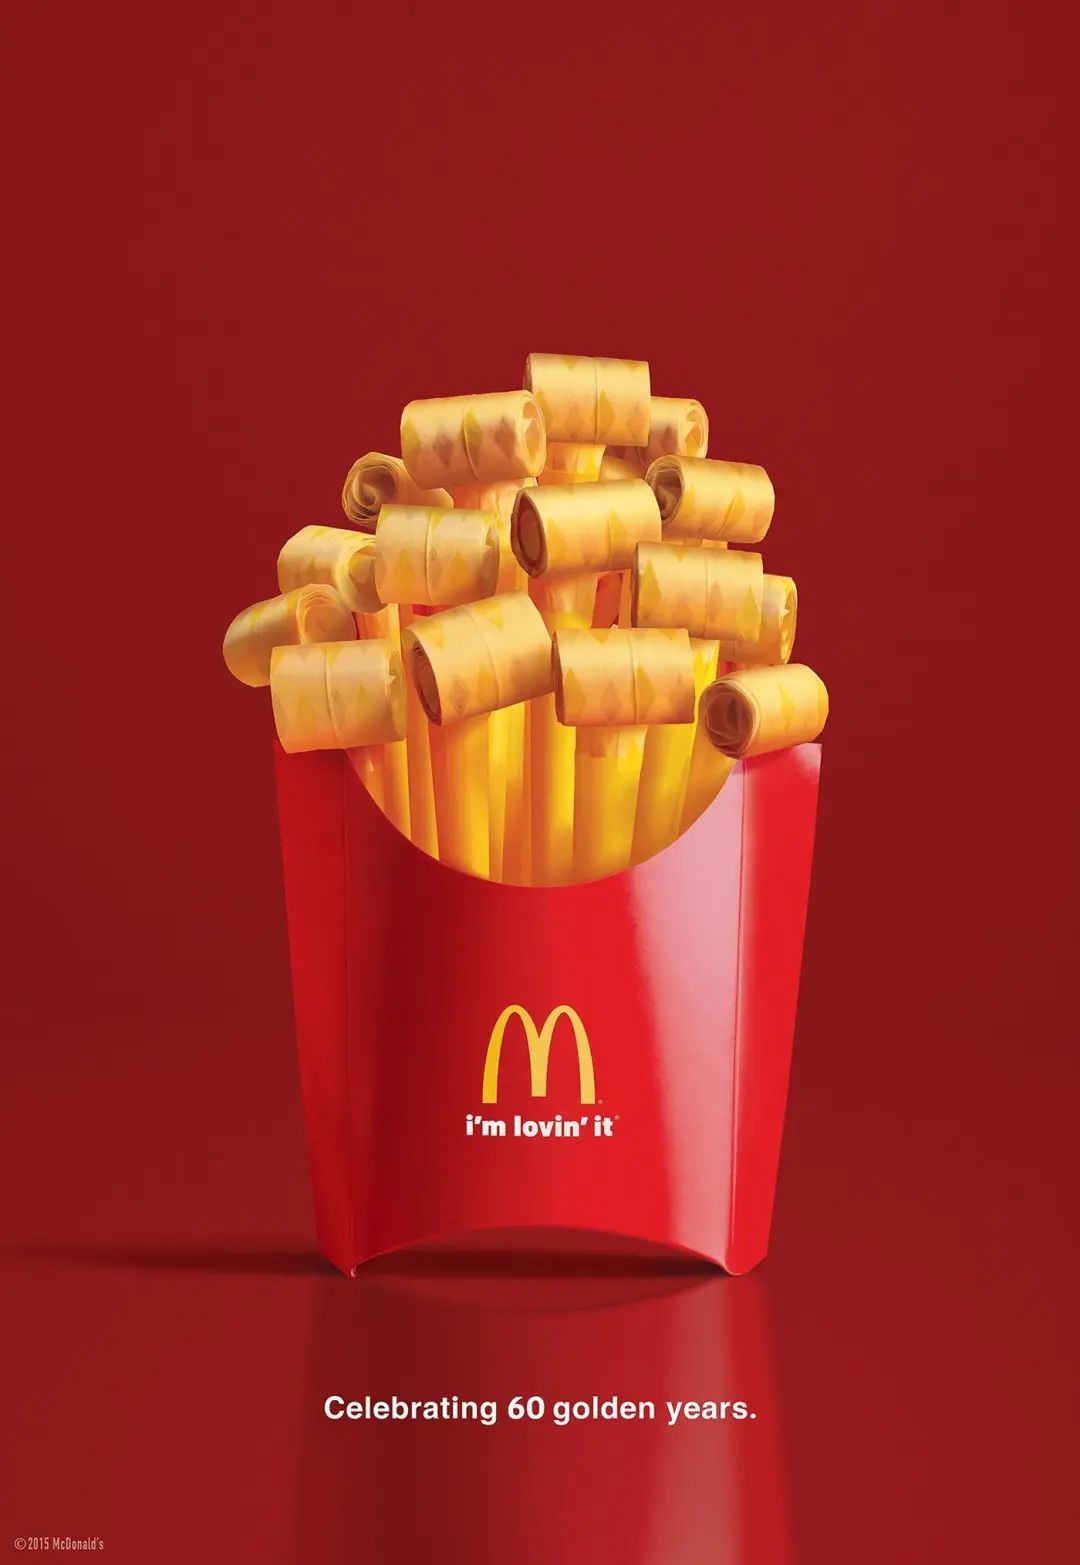 创意巨头麦当劳60年海报史，值得广告人啃一辈子-FoodTalks全球食品资讯